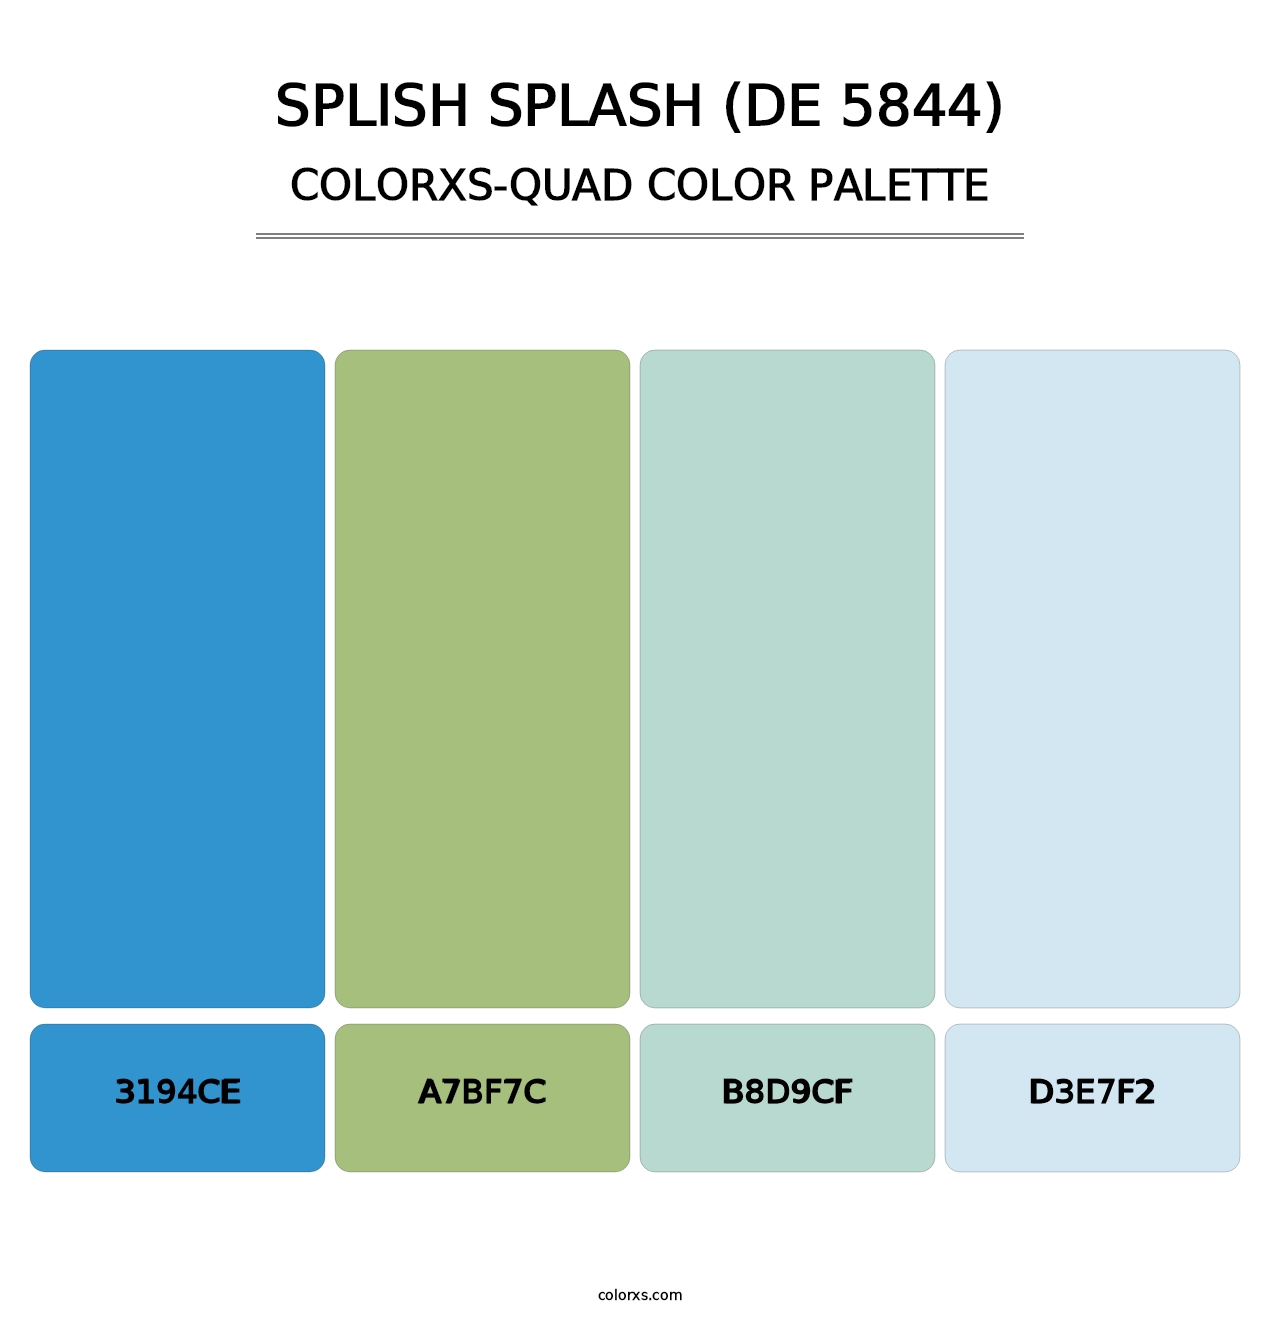 Splish Splash (DE 5844) - Colorxs Quad Palette